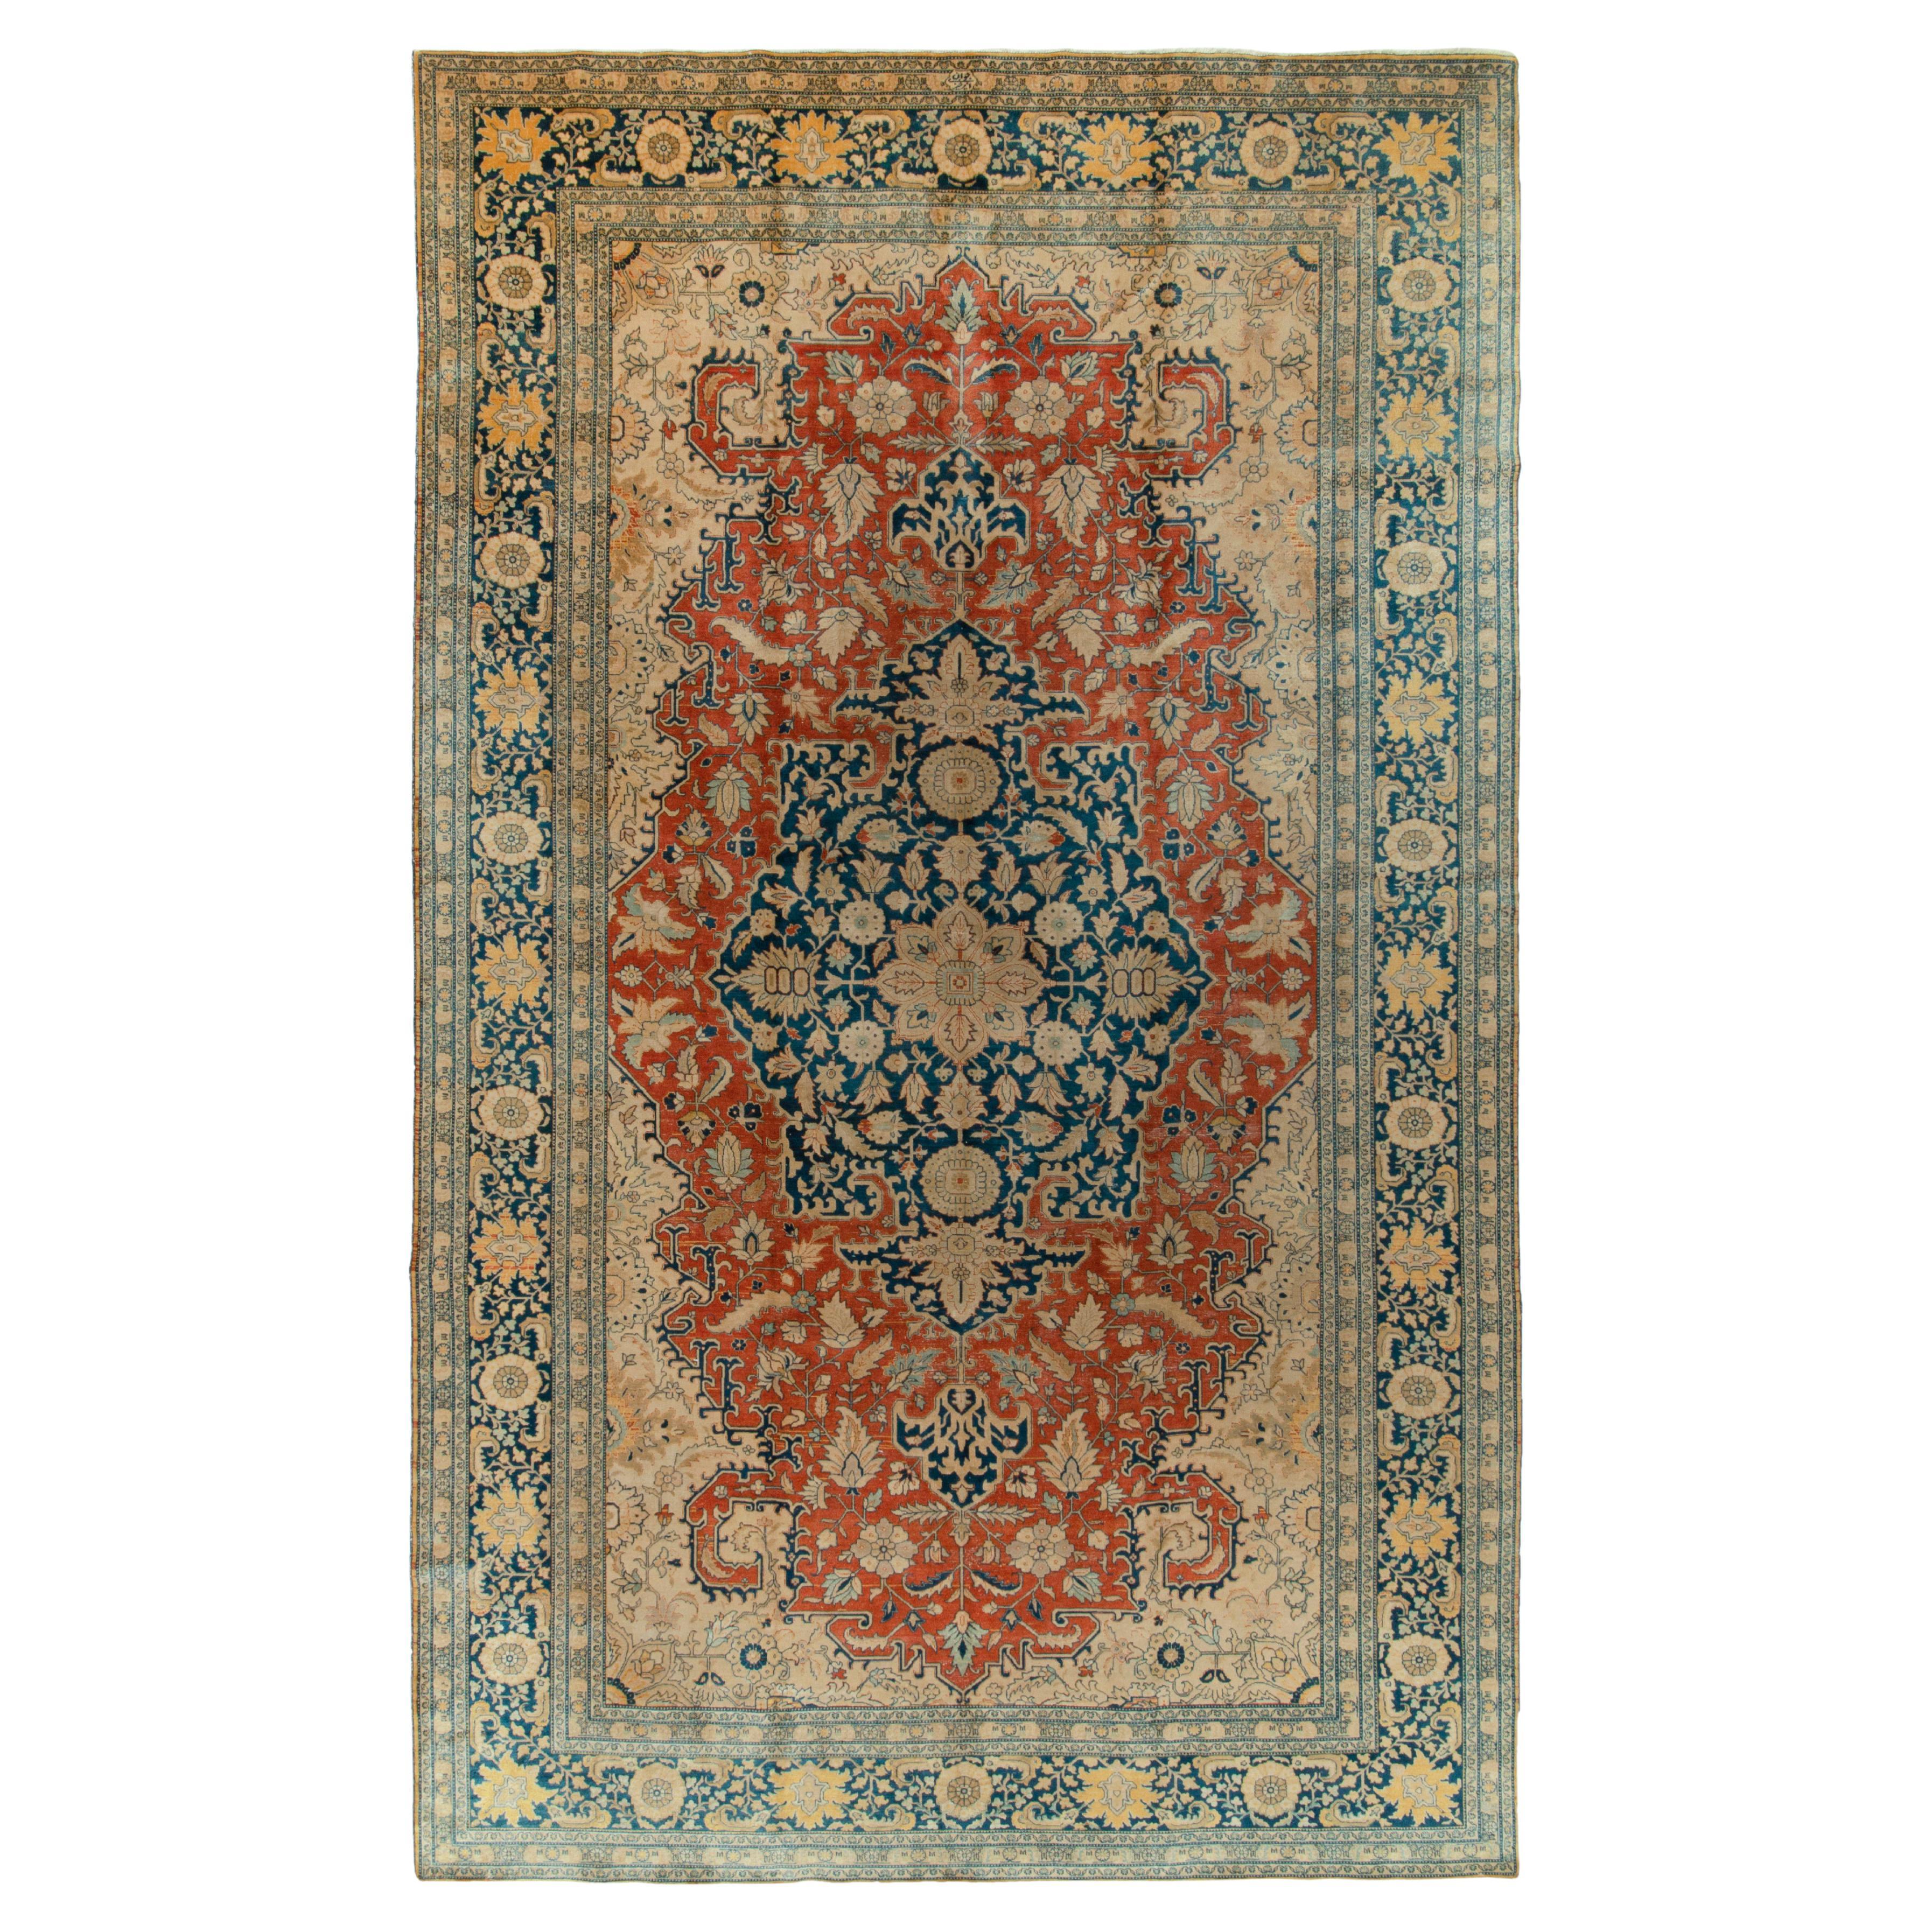 Antique Tabriz rug in Orange Blue, Beige Floral Medallion Pattern by Rug & Kilim